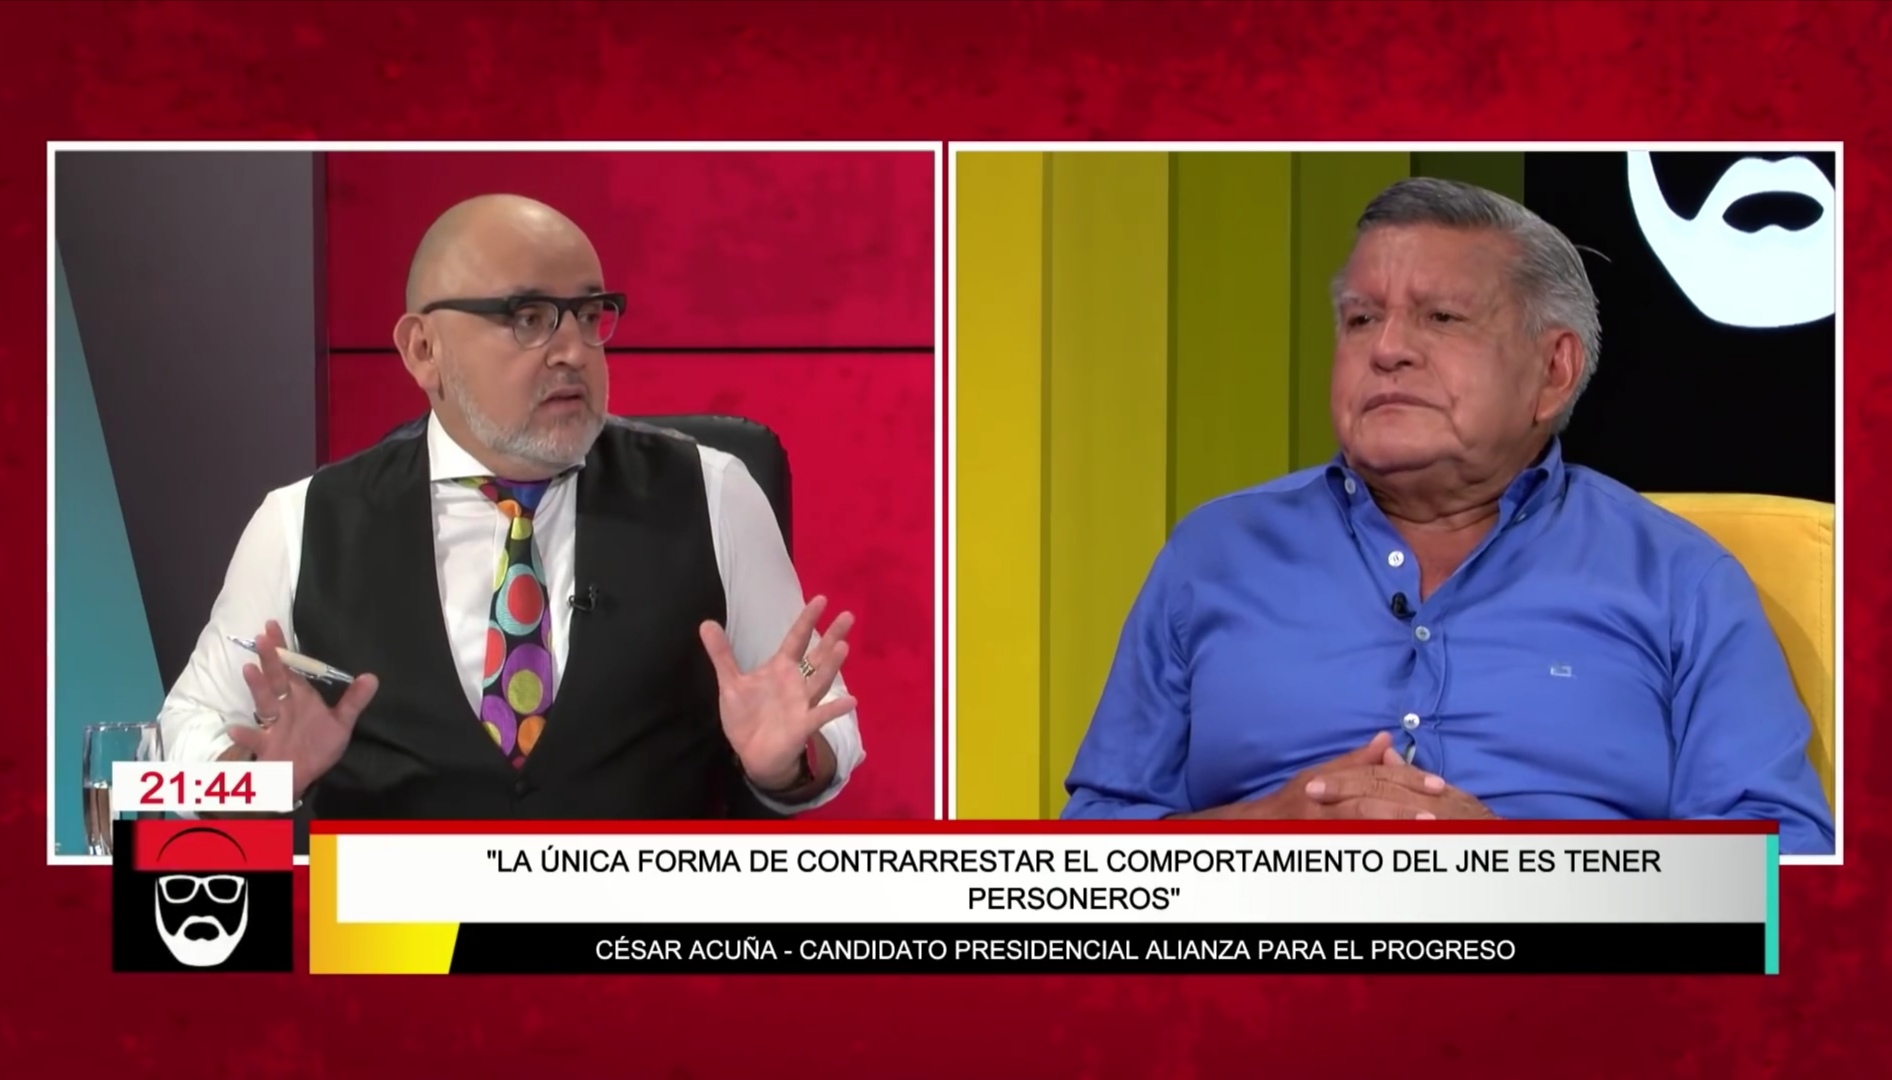 Portada: César Acuña: “Vamos a poner personeros en todas las mesas de elecciones”